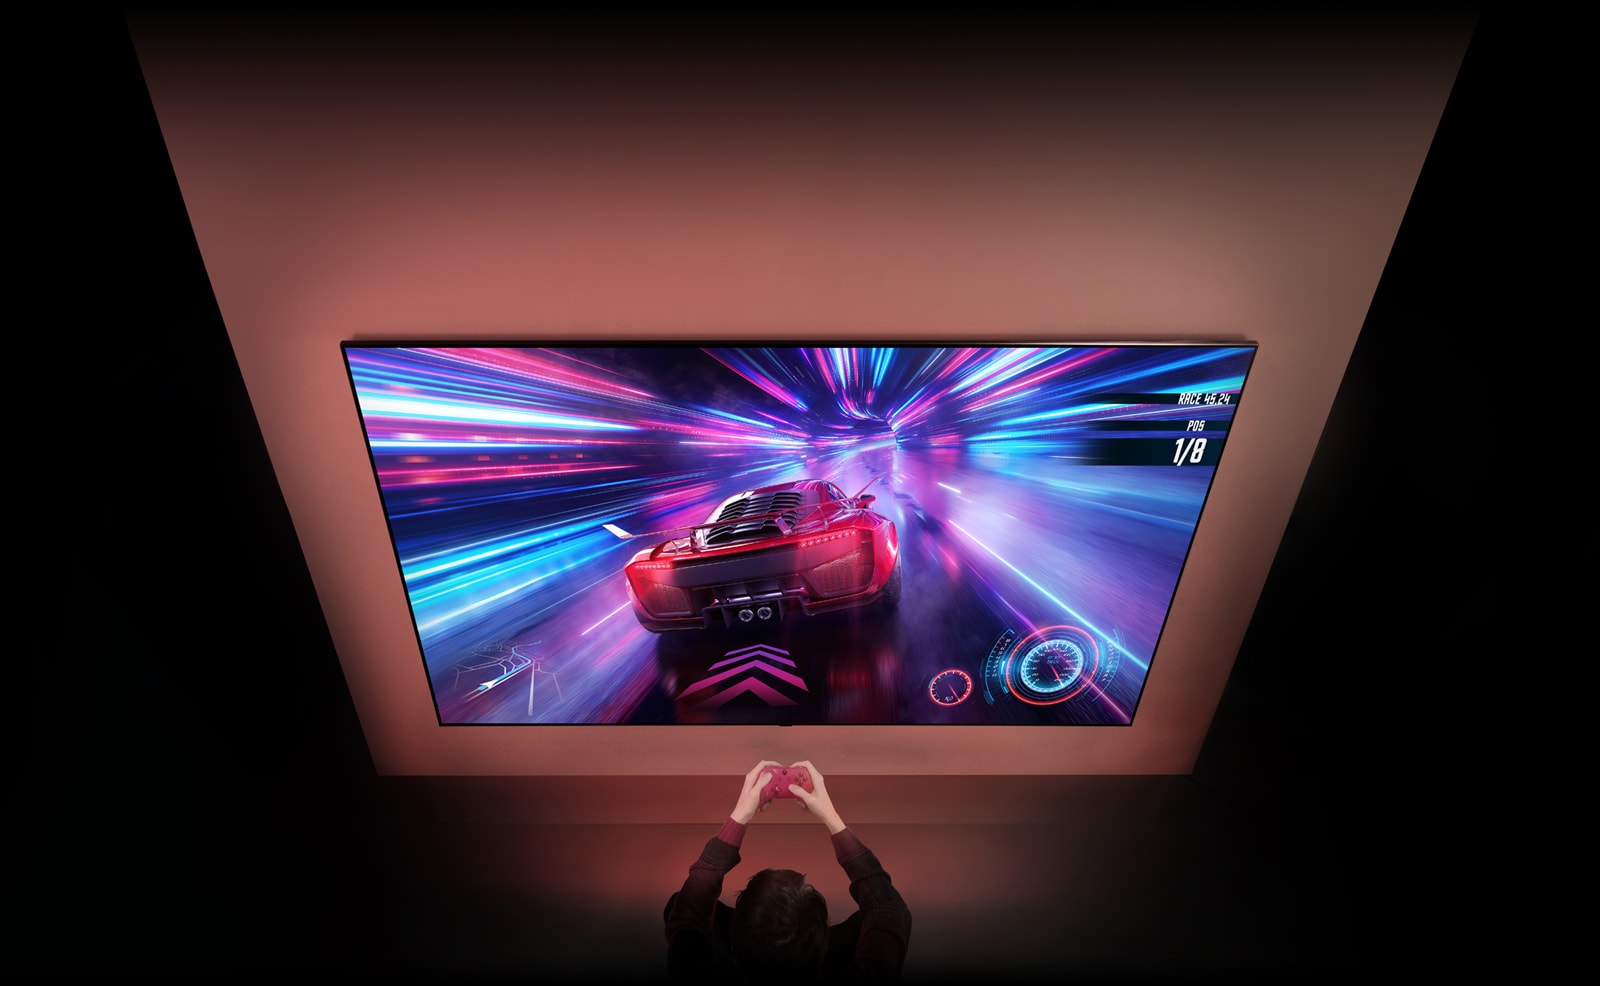 На стене установлен большой телевизор, на экране которого вы можете видеть экран гоночной игры. Перед телевизором вы можете видеть руки и контроллеры человека, который сосредоточен на игре.